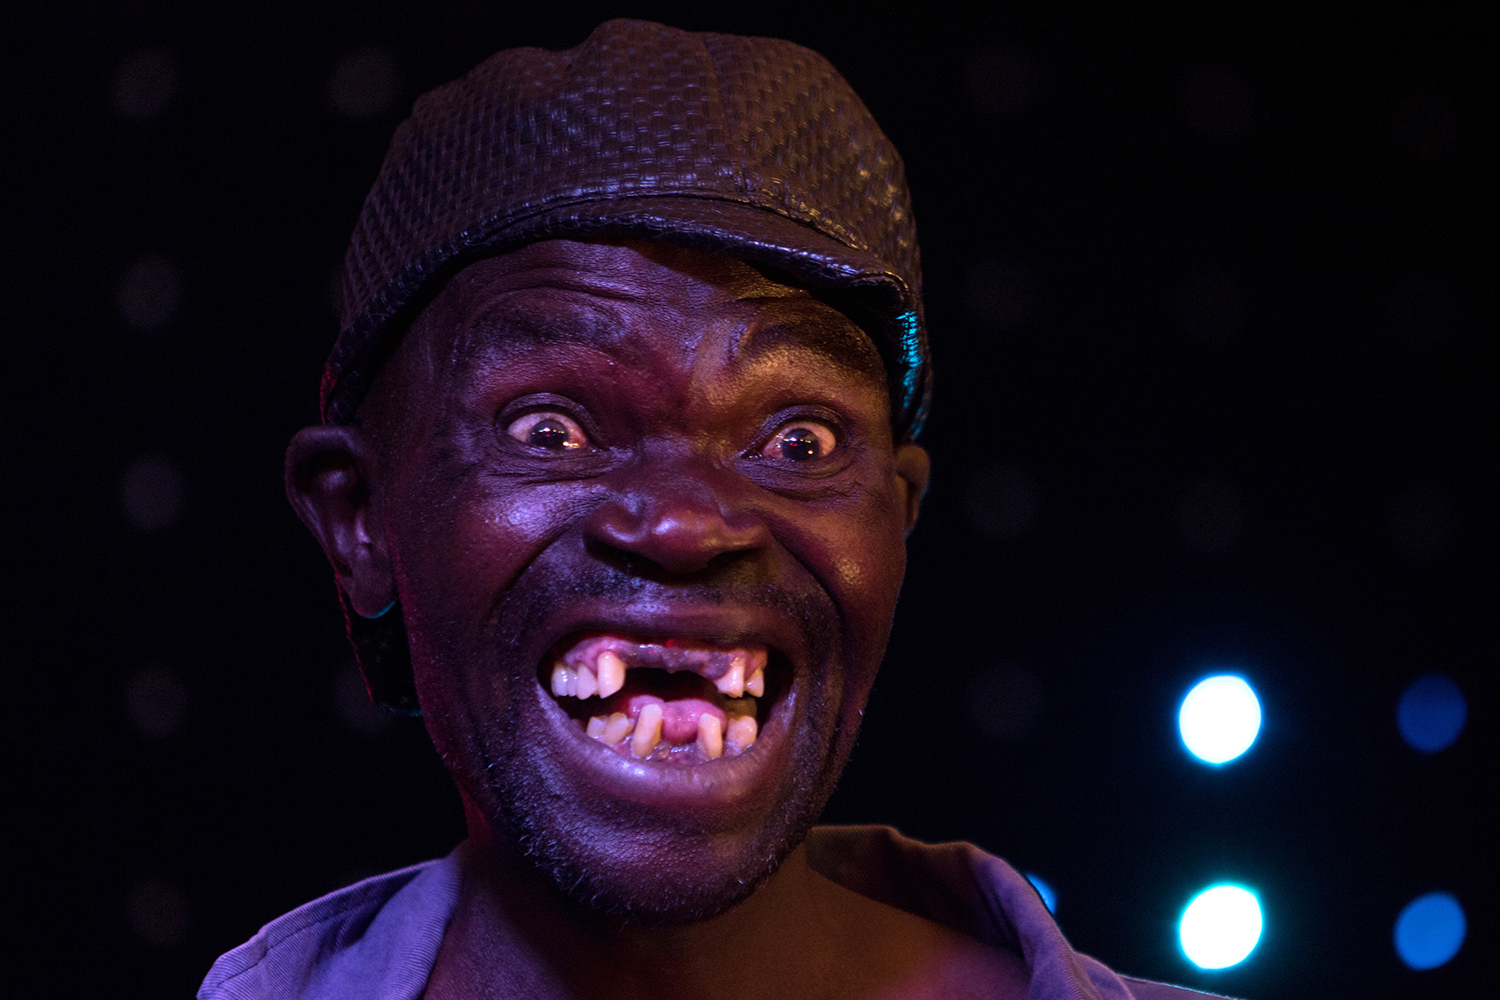 Conflicto en un concurso de feos en Zimbabue por premiar al más ‘guapo’